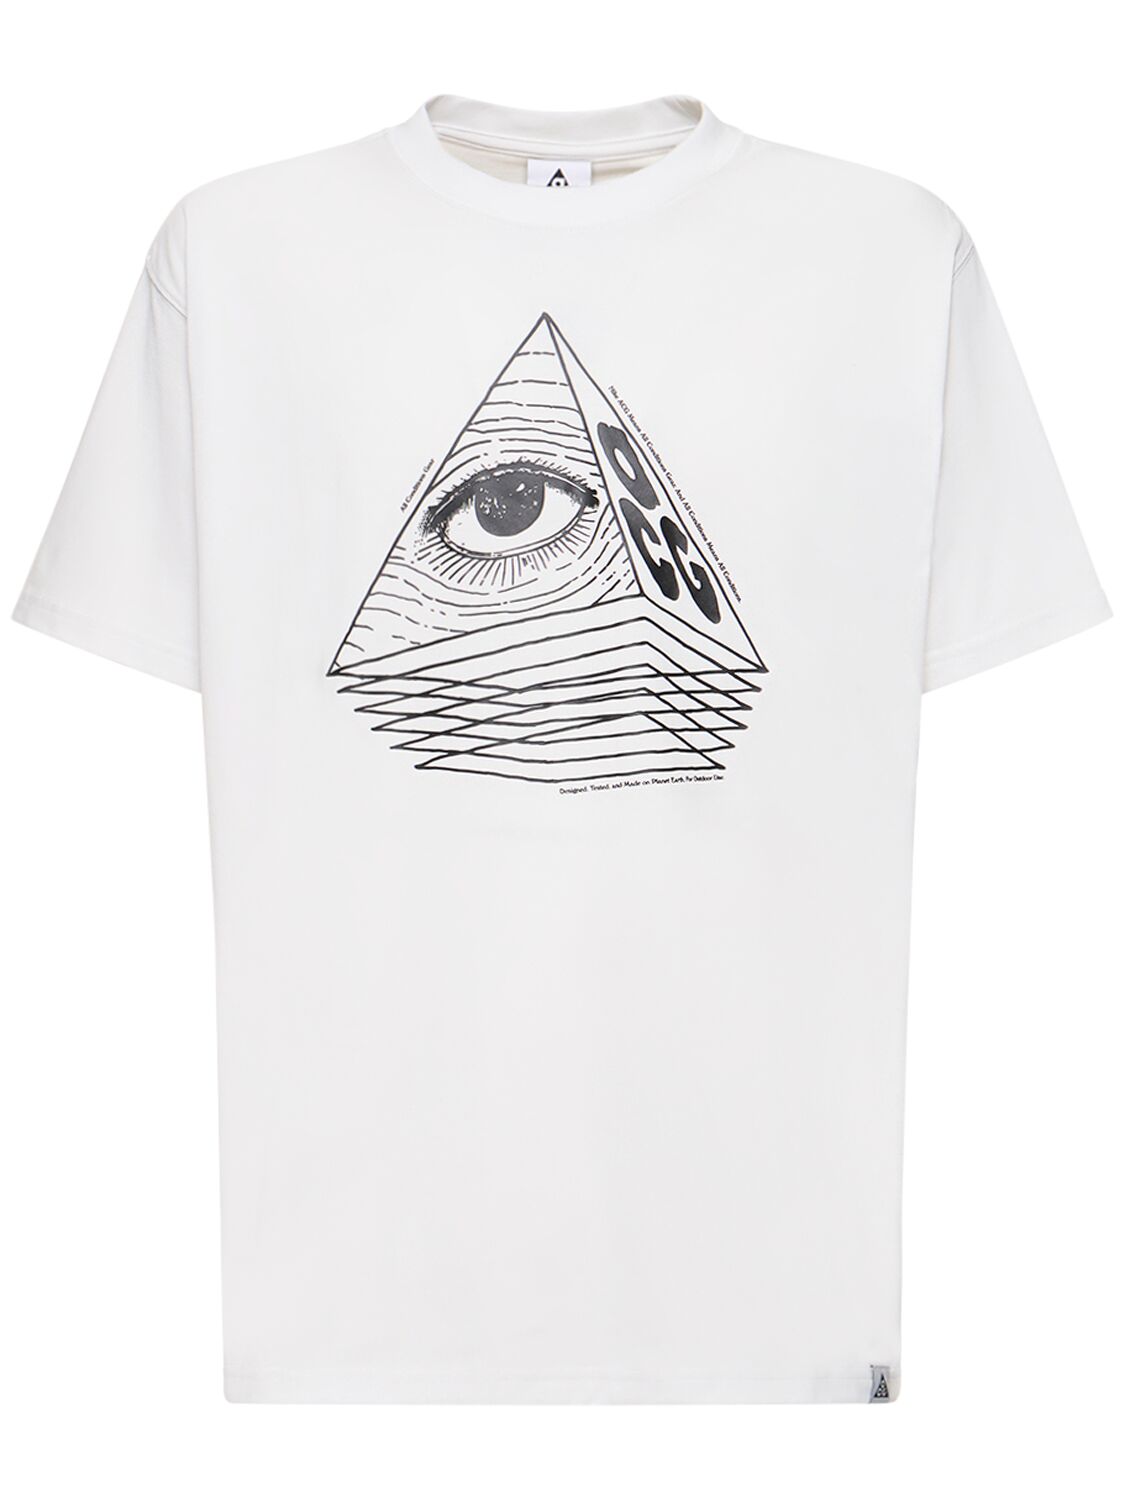 Image of Acg Changing Eye T-shirt